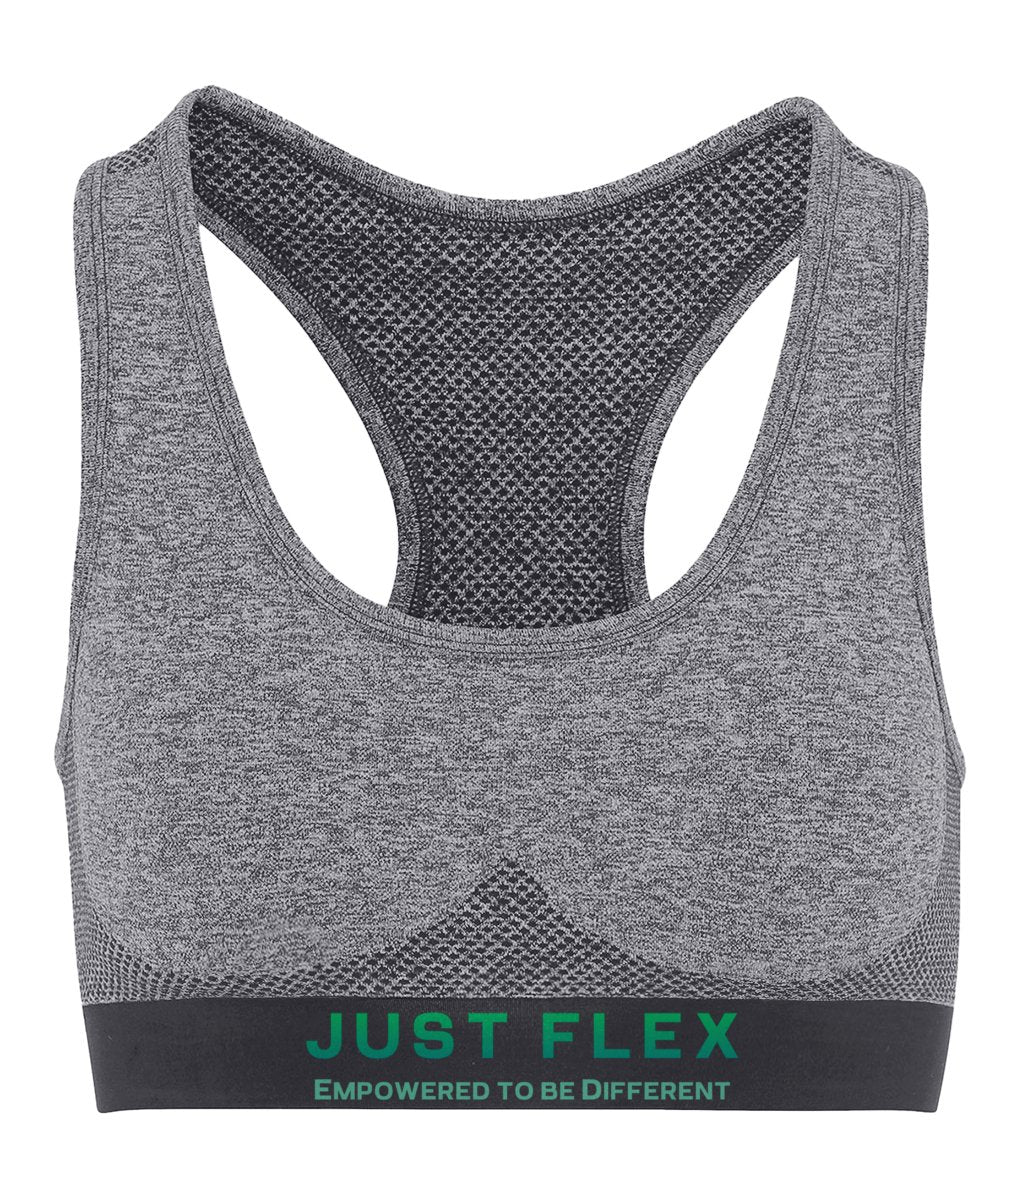 Just Flex - Empowered To Be Different - Womens TriDri® Seamless '3D fit' Sports Bra - Just Flex